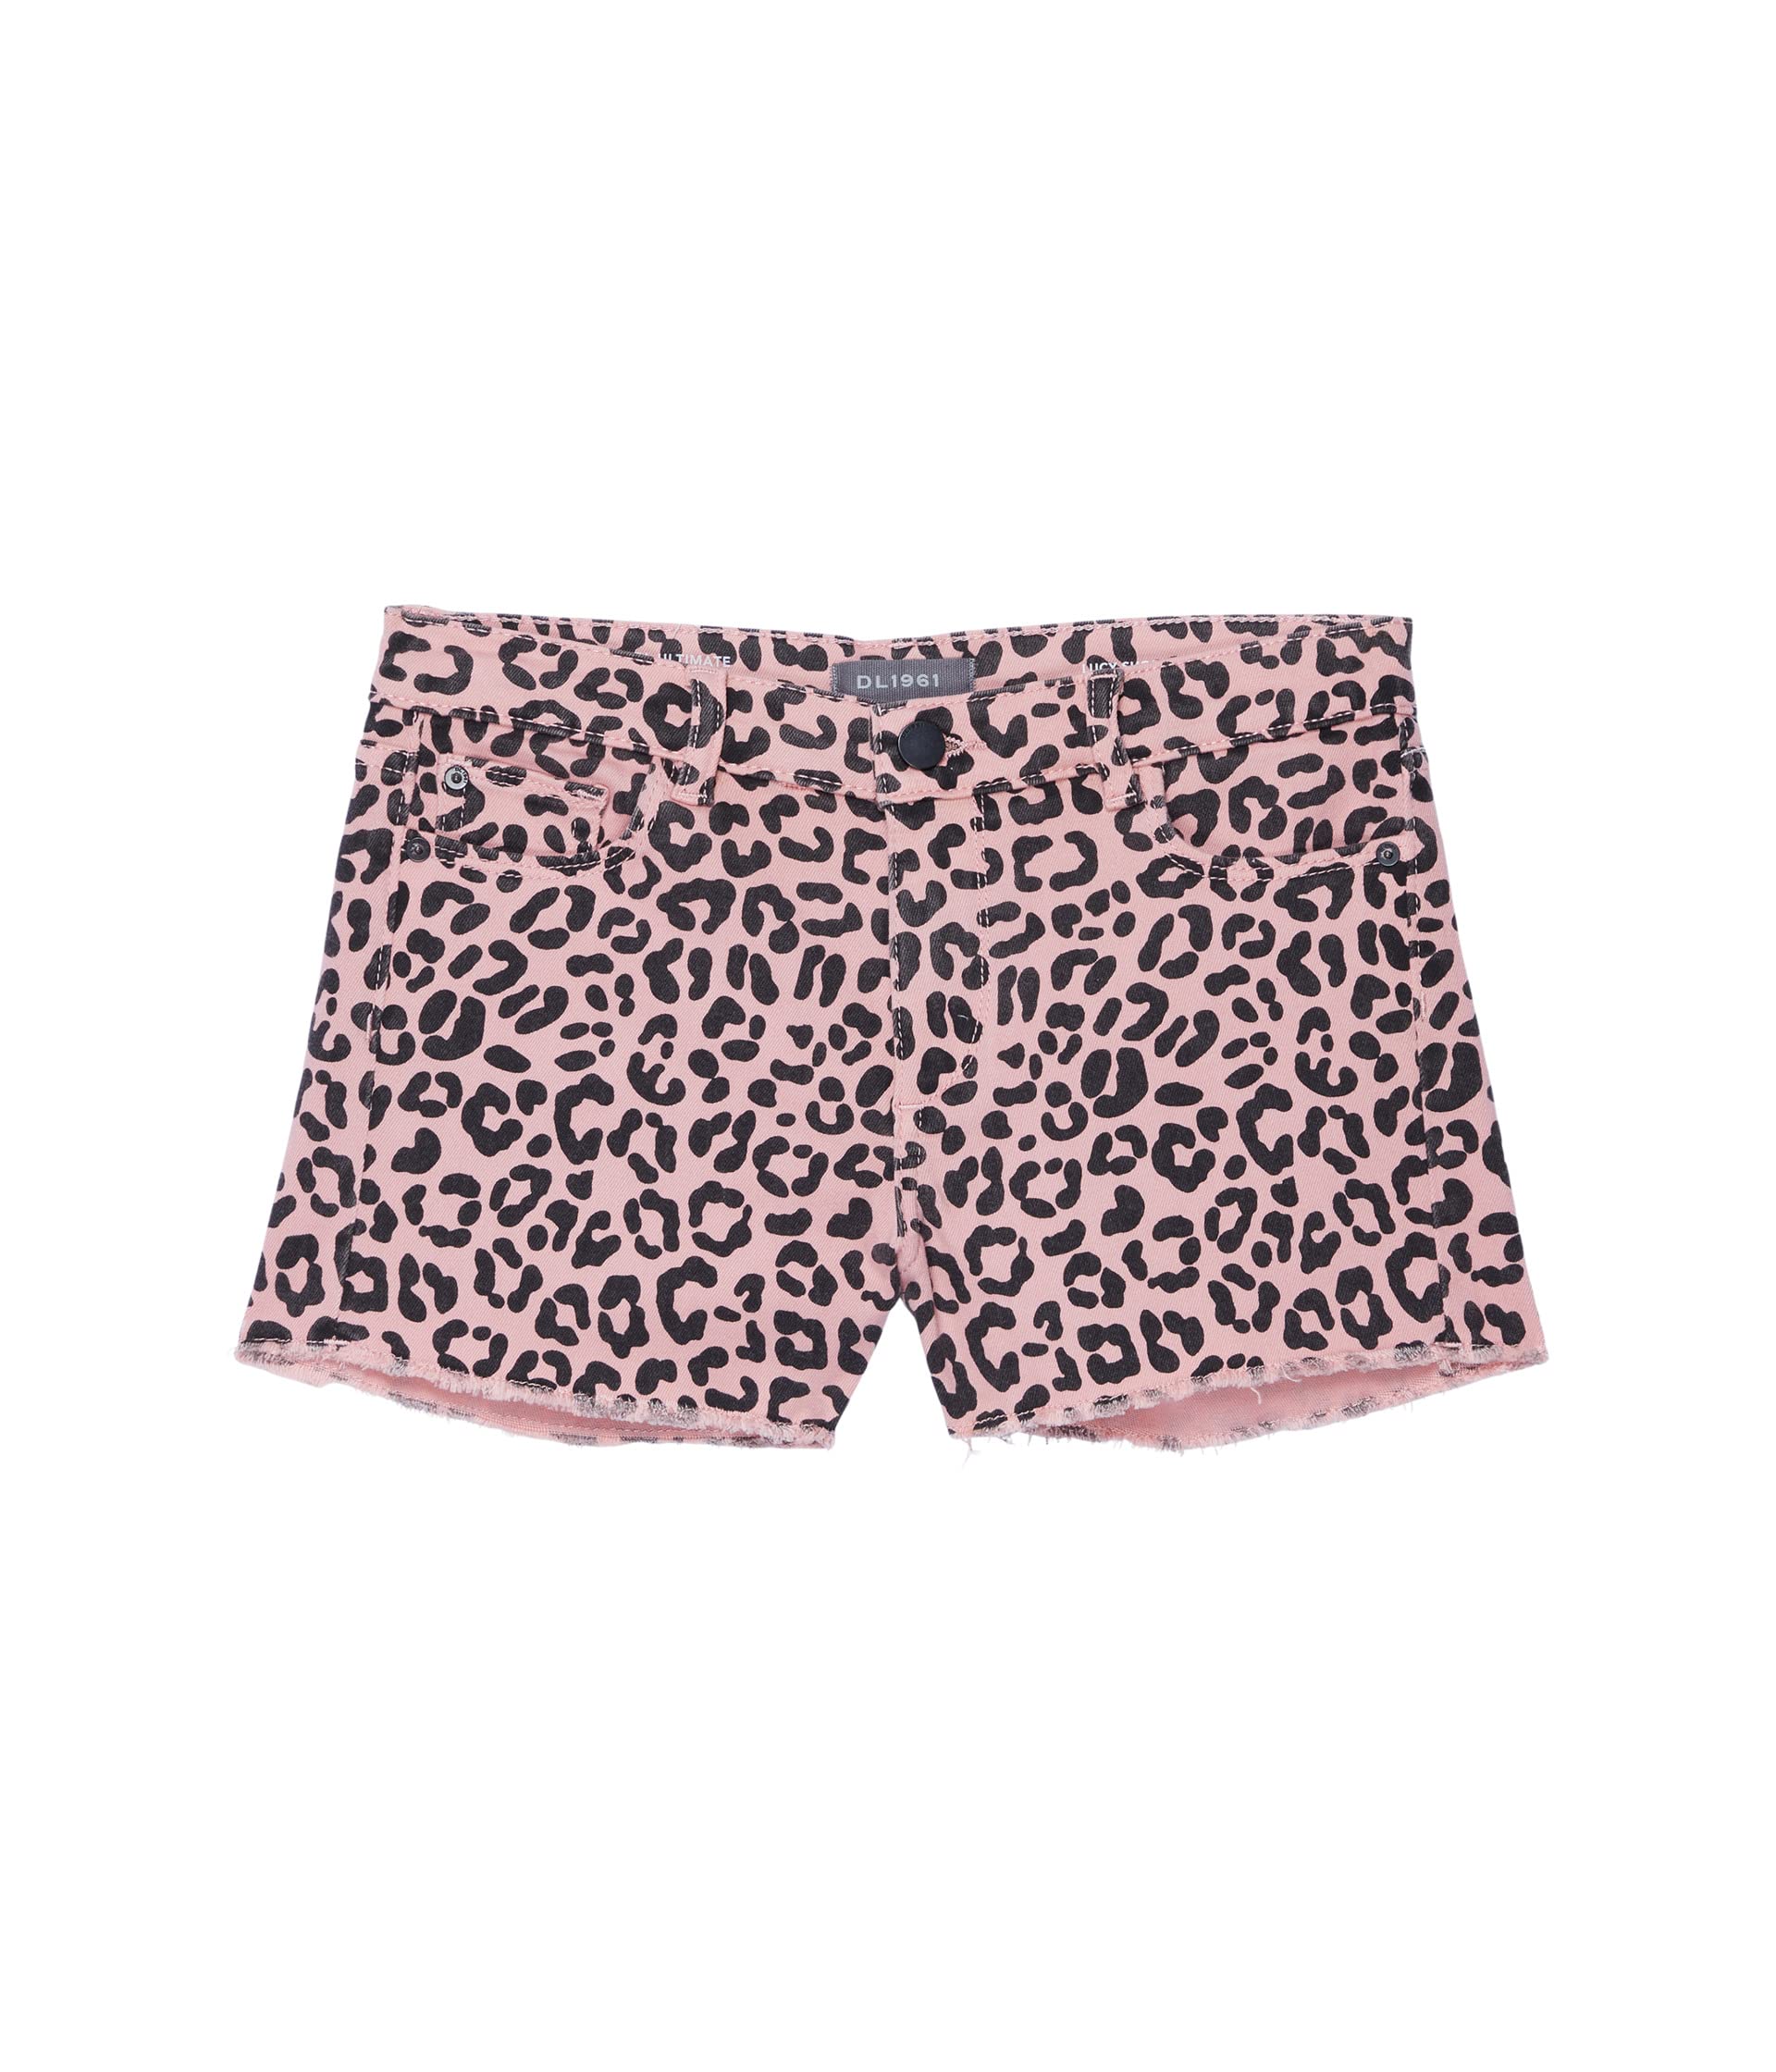 Шорты DL1961 Kids, Lucy Cutoffs Shorts in Pink Leopard шорты dl1961 lucy cutoffs shorts in ross distressed цвет ross distressed